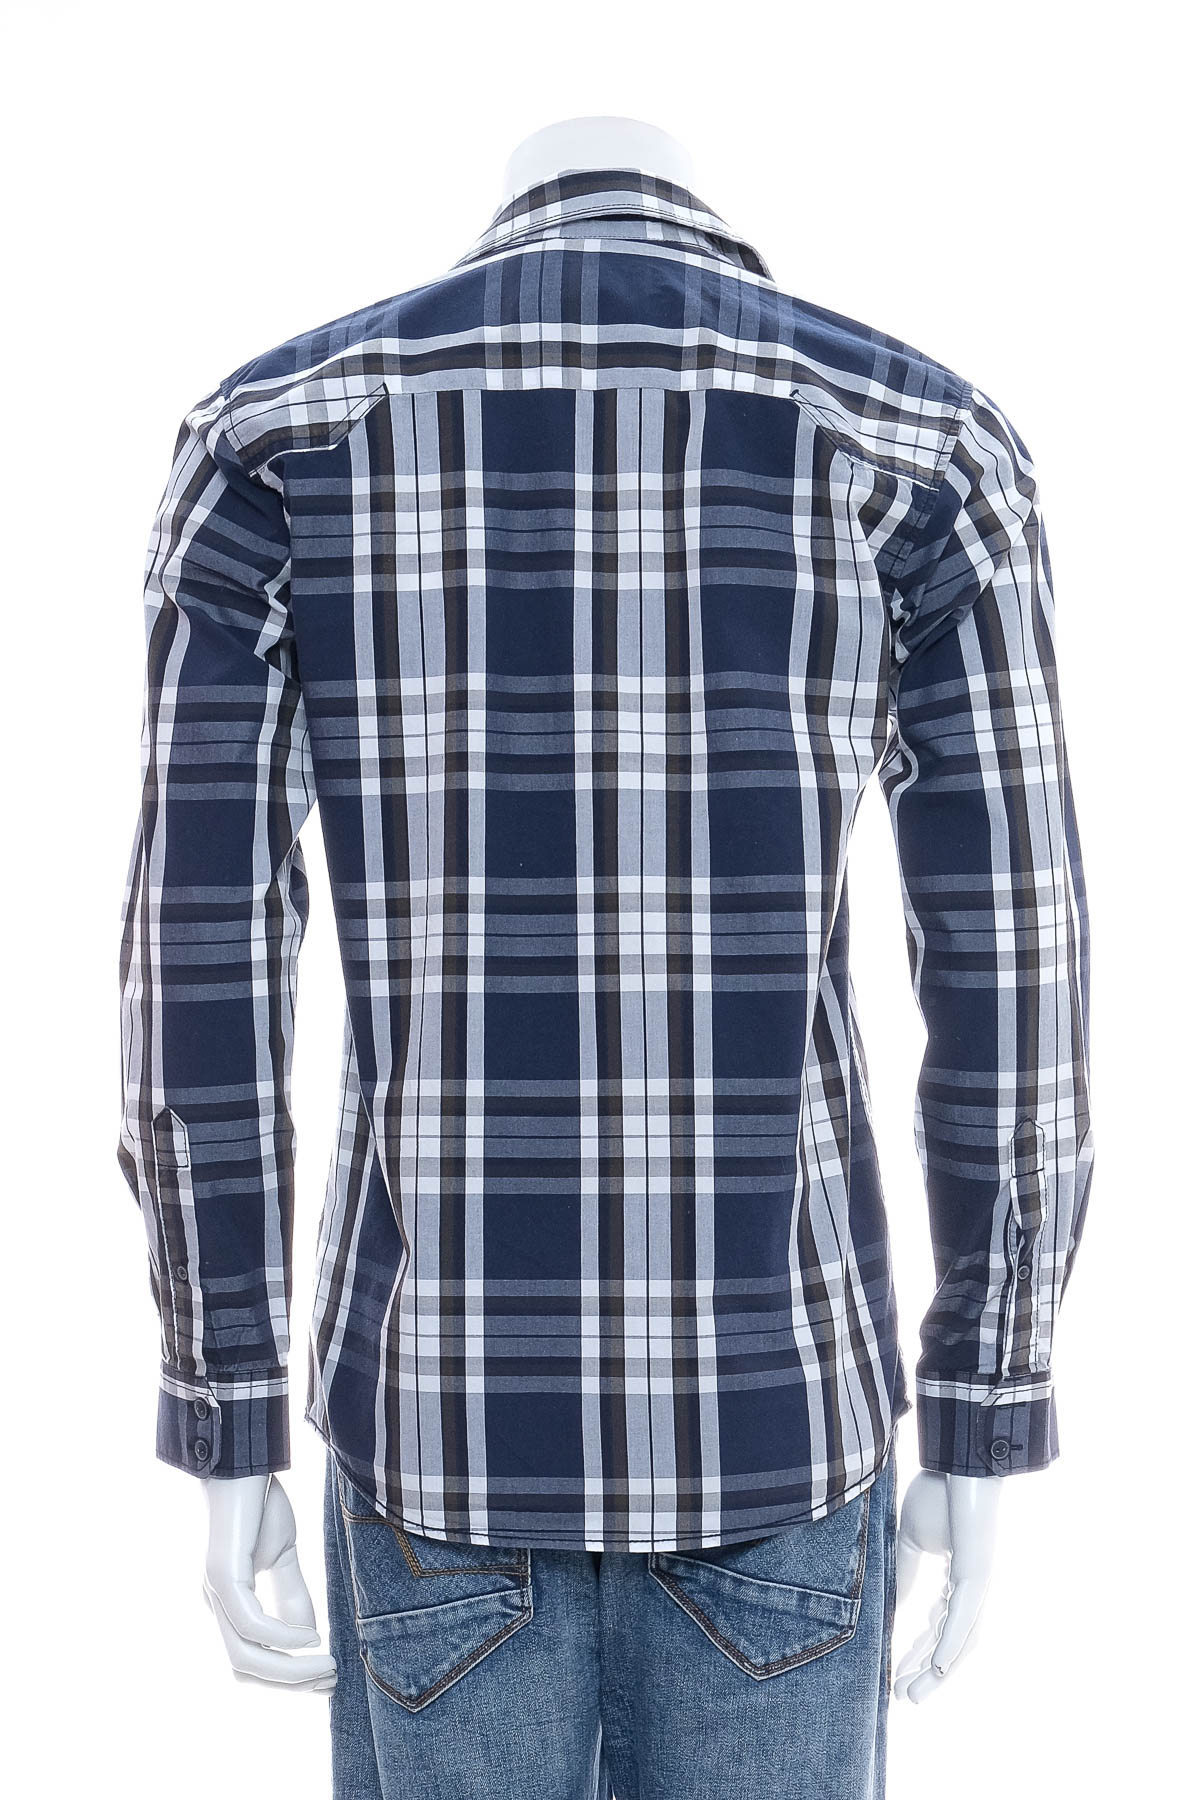 Men's shirt - CORE by Jack & Jones - 1